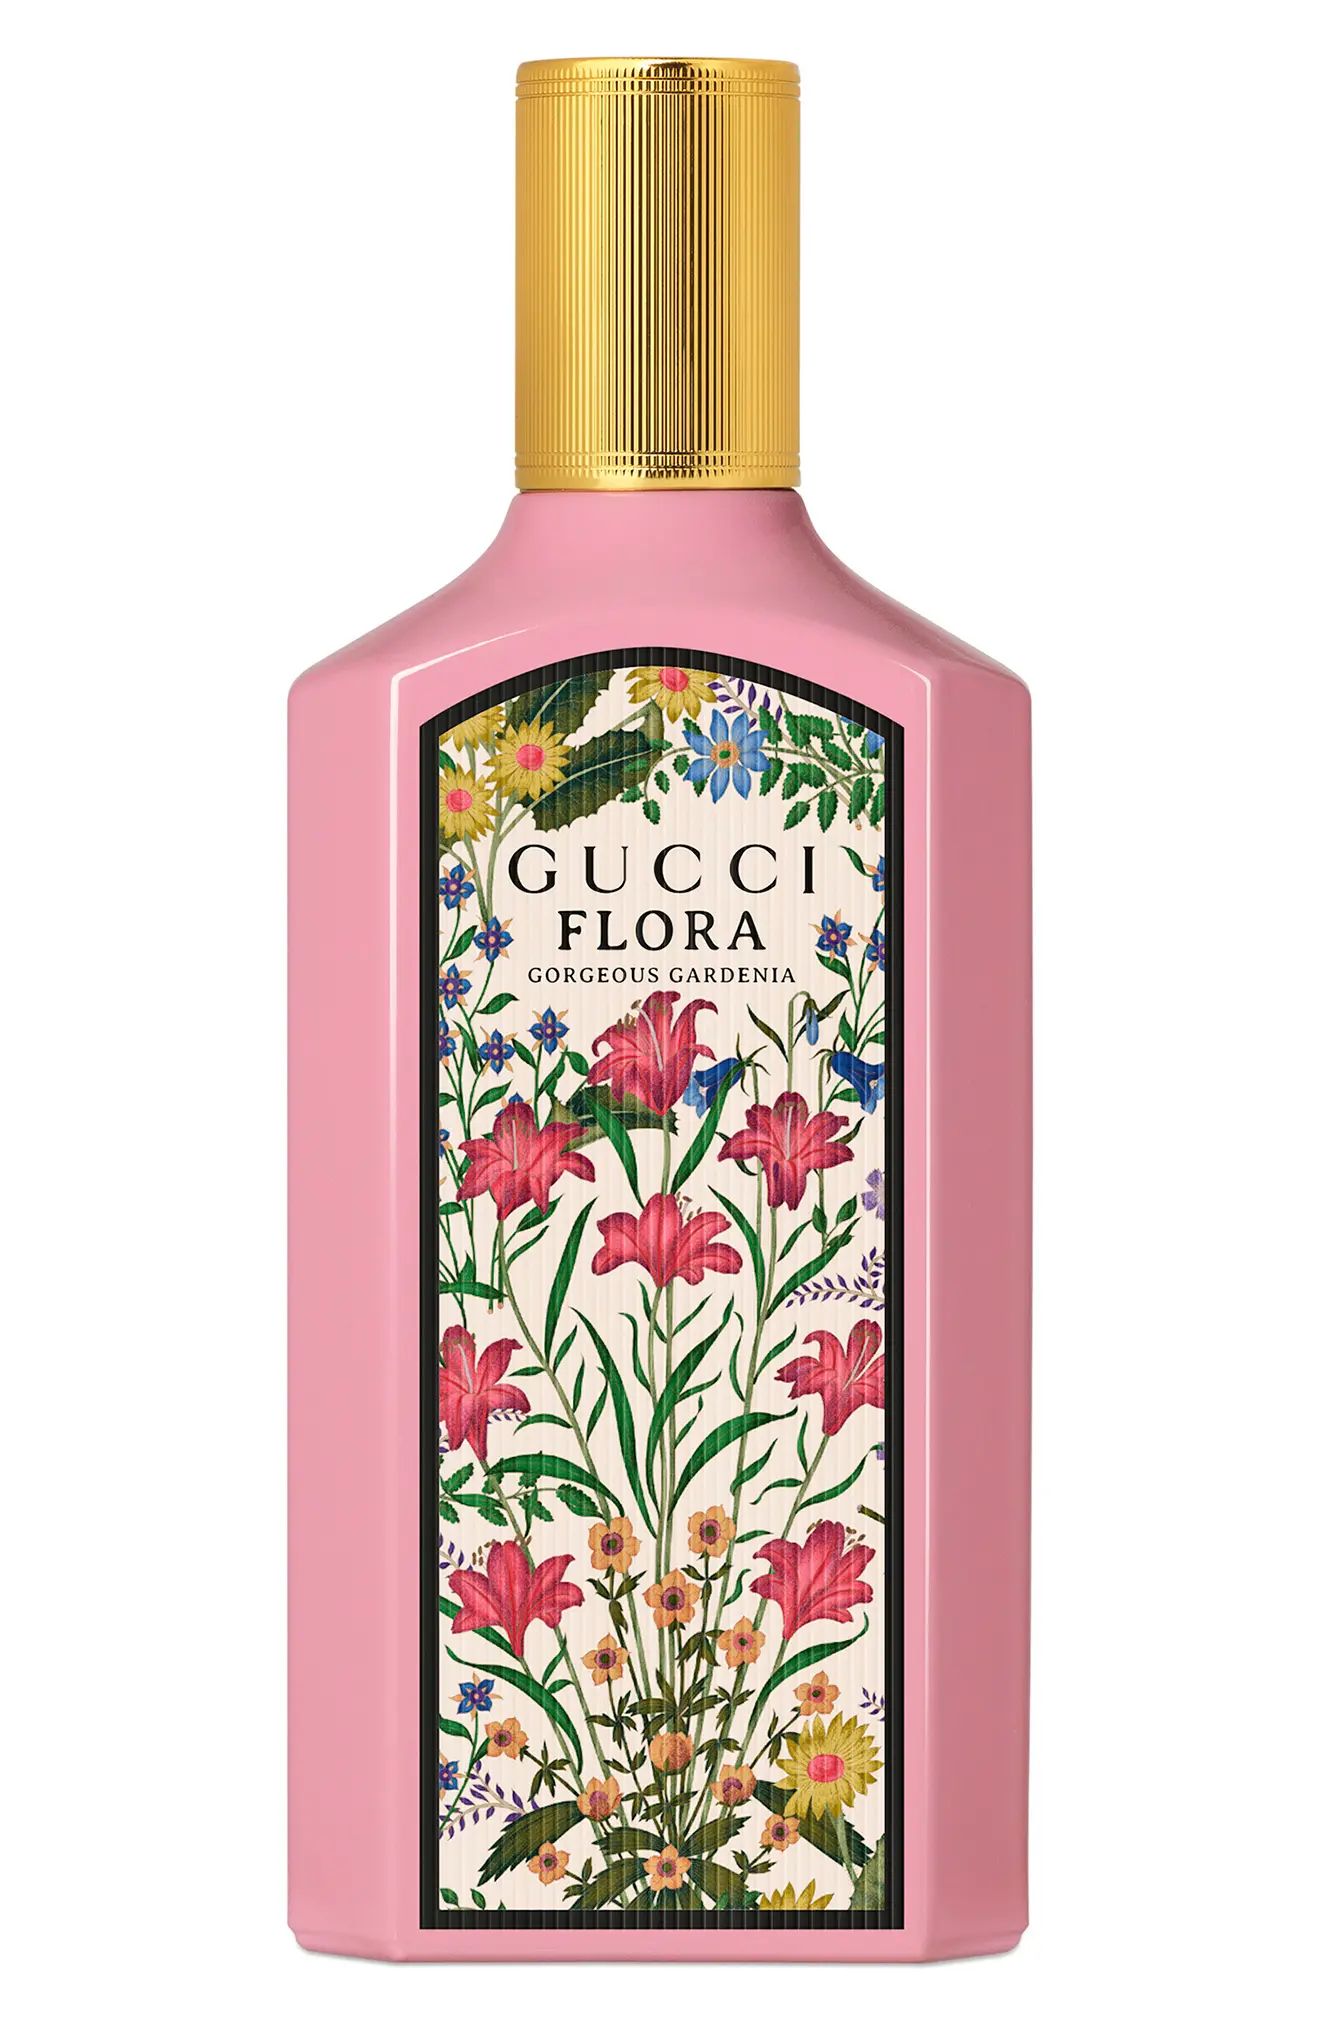 Gucci Flora Gorgeous Gardenia Eau de Parfum at Nordstrom, Size 1.6 Oz | Nordstrom